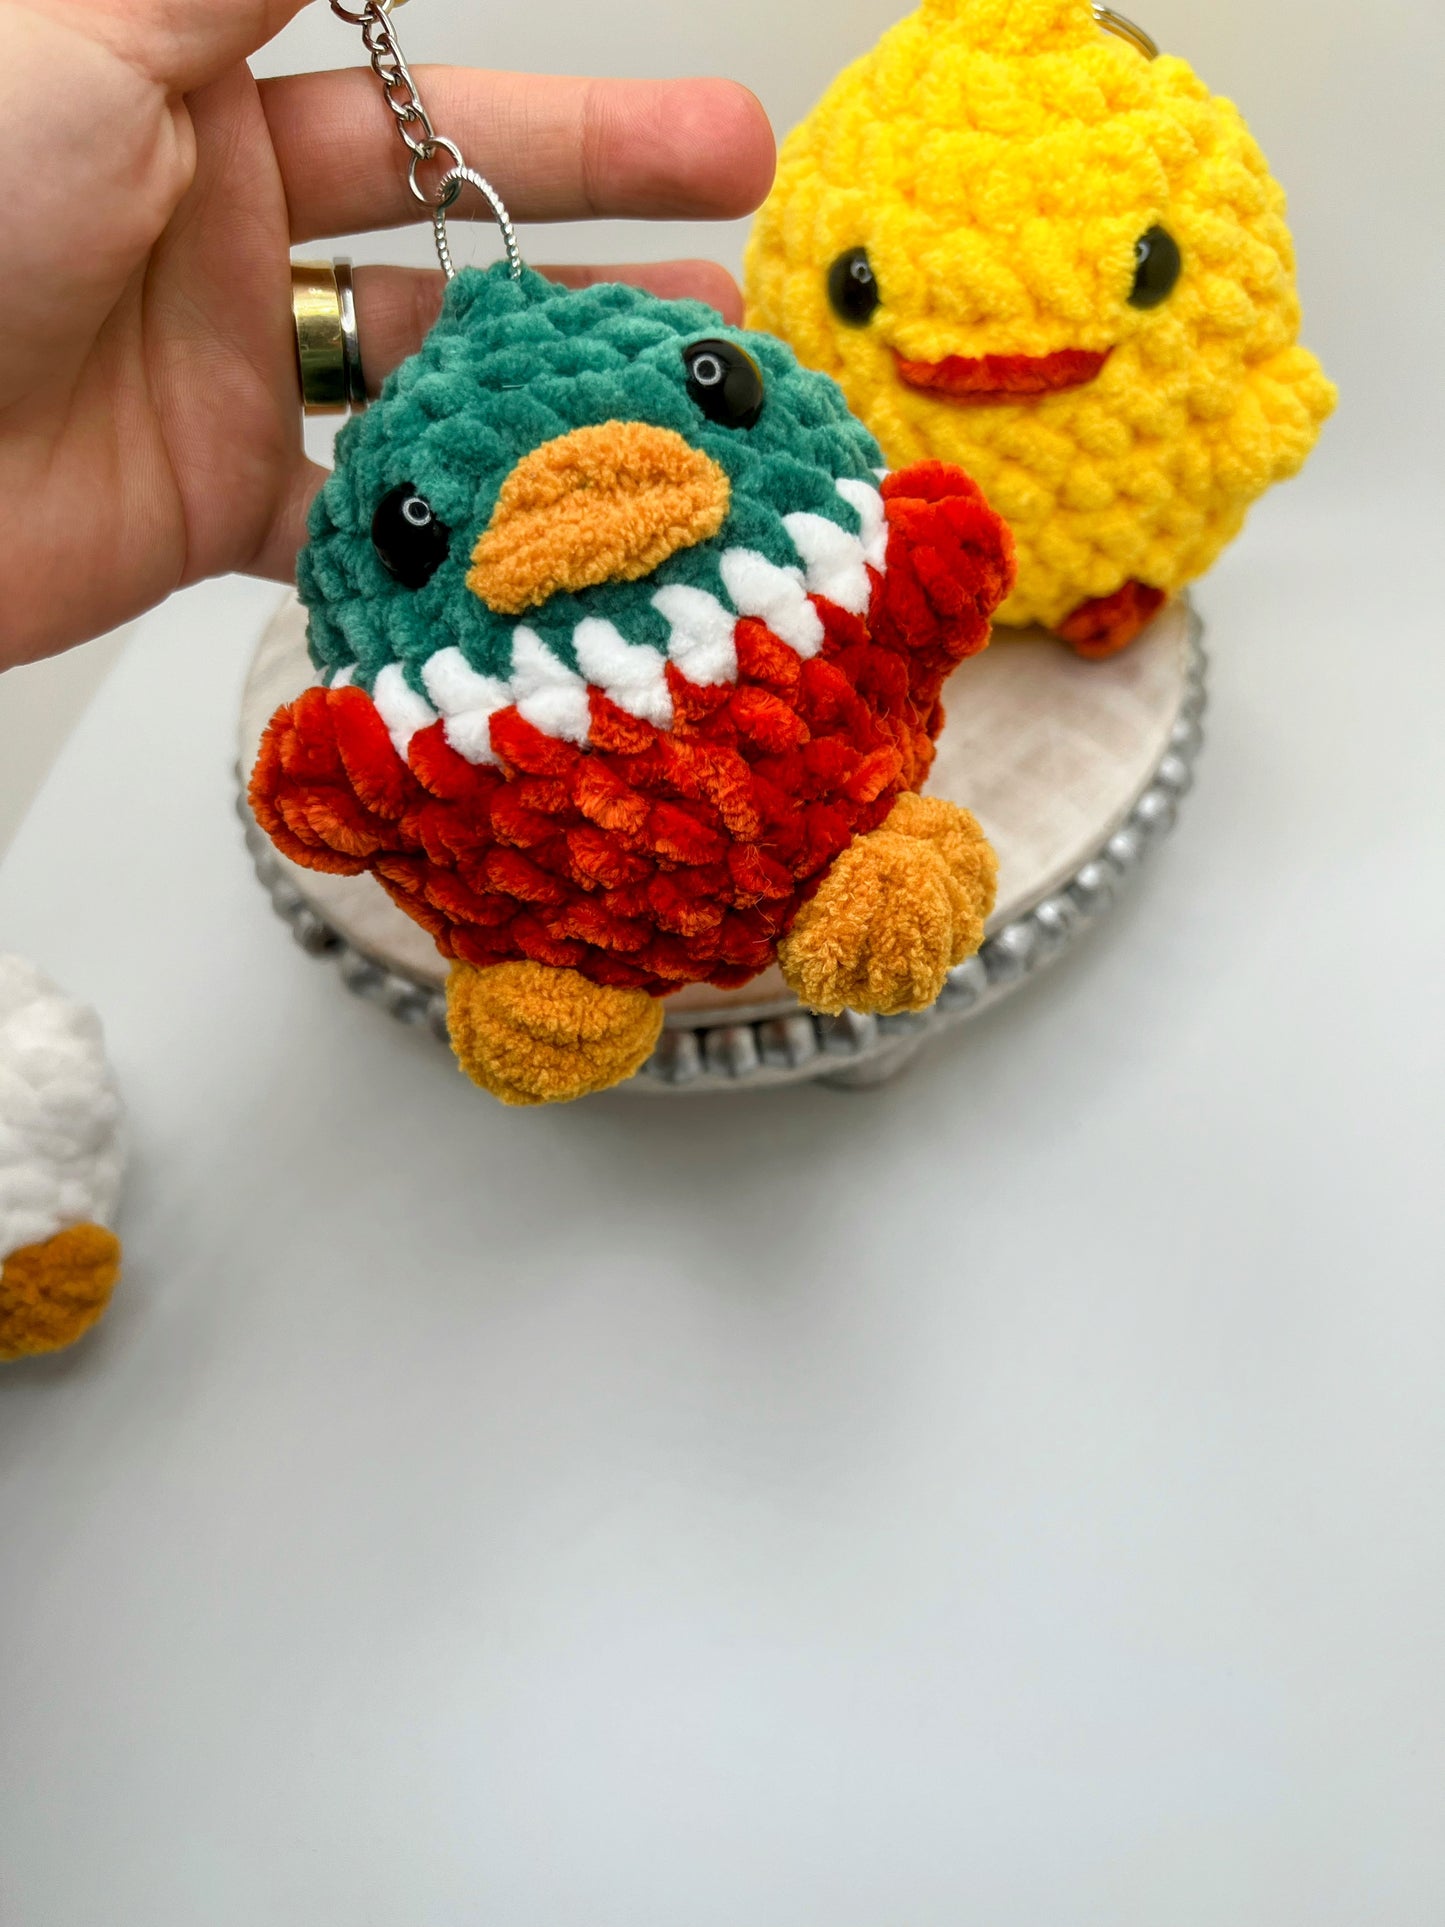 Ducks & Chicken Keychain - Crochet Knitted Amigurumi Toy